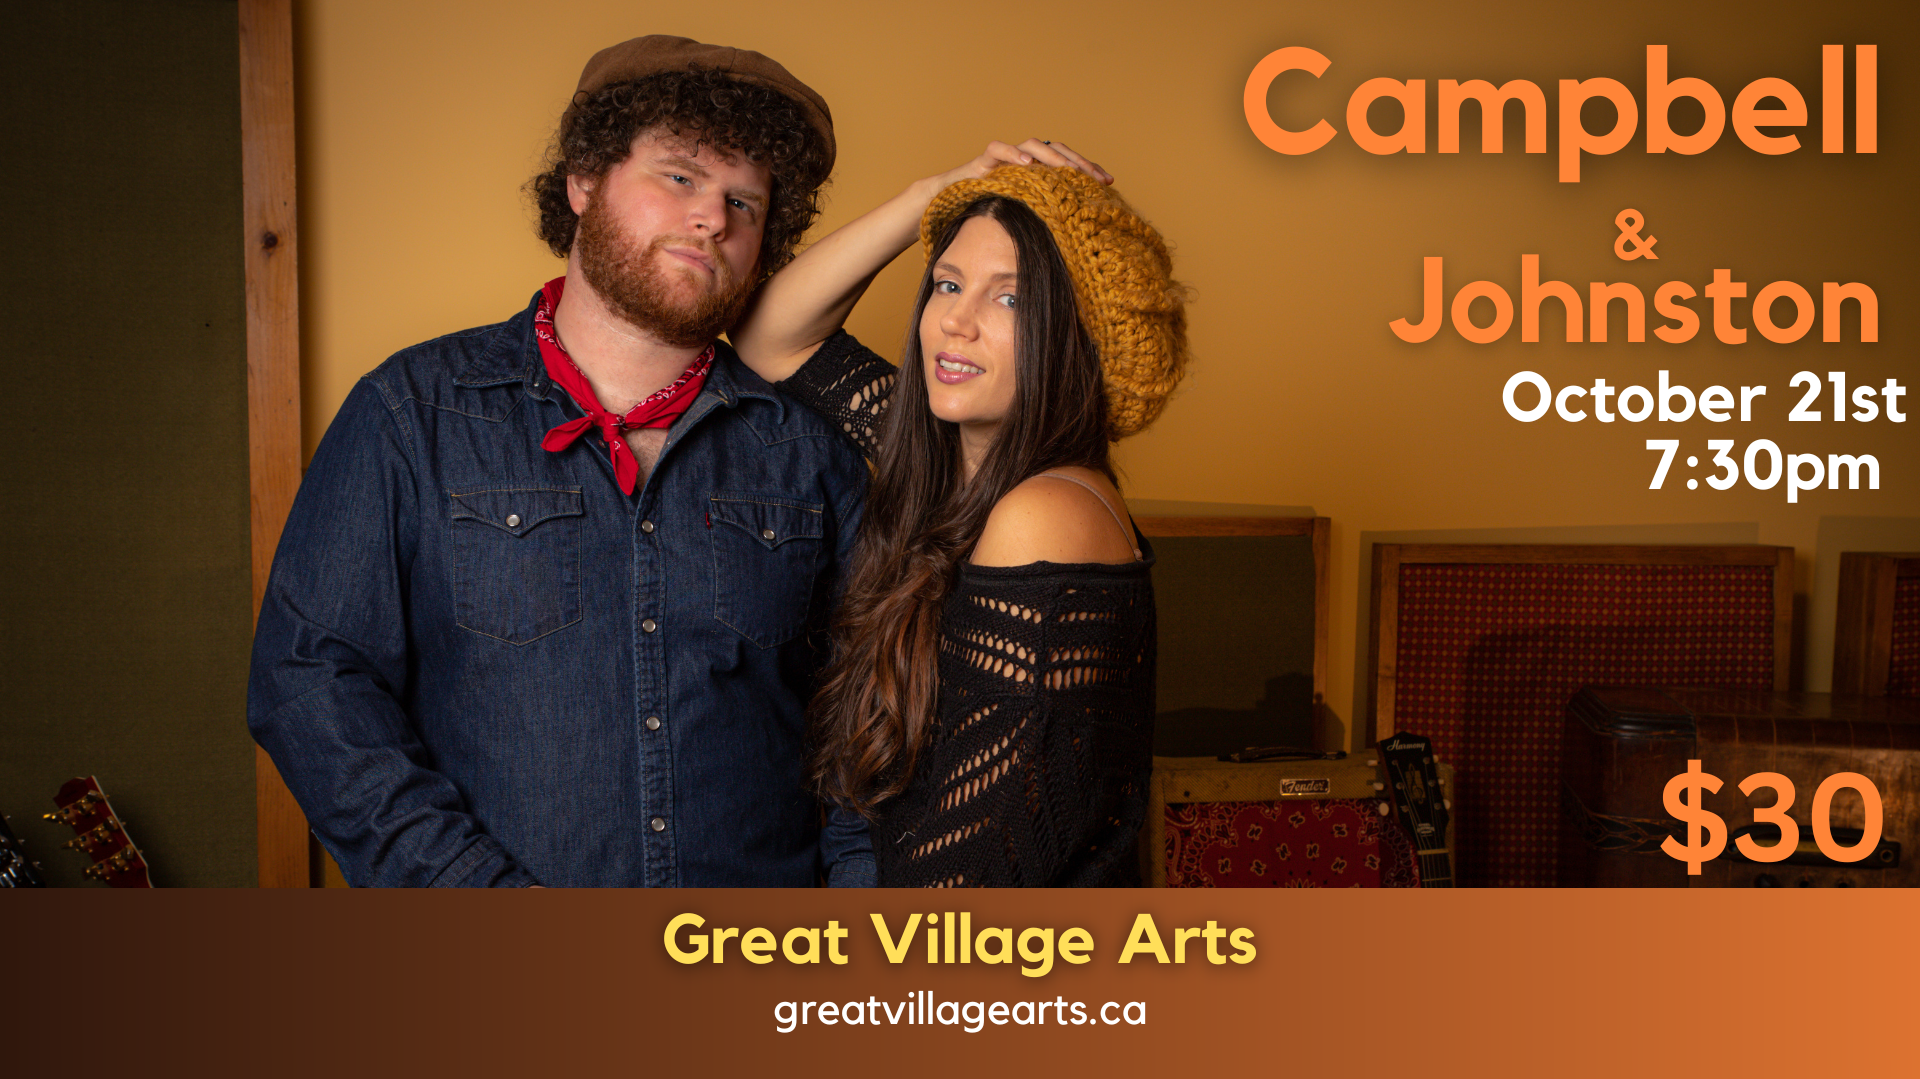 Campbell & Johnston - Great Village Arts - October 21